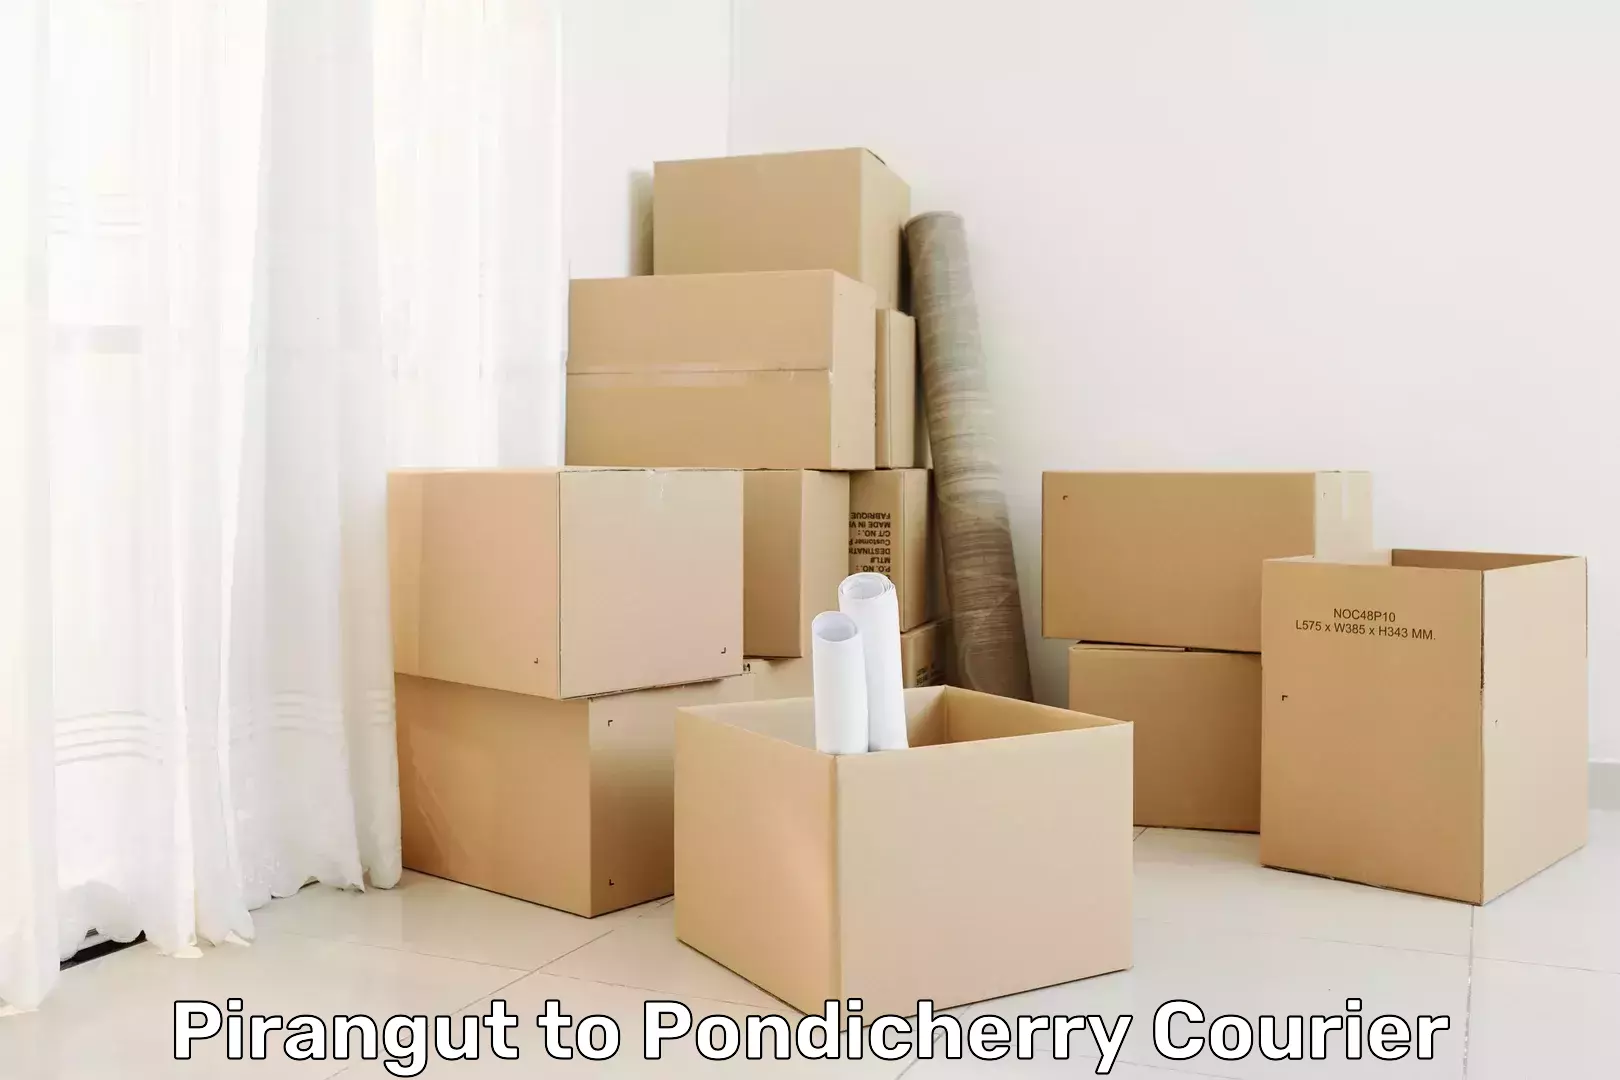 High-speed delivery Pirangut to Pondicherry